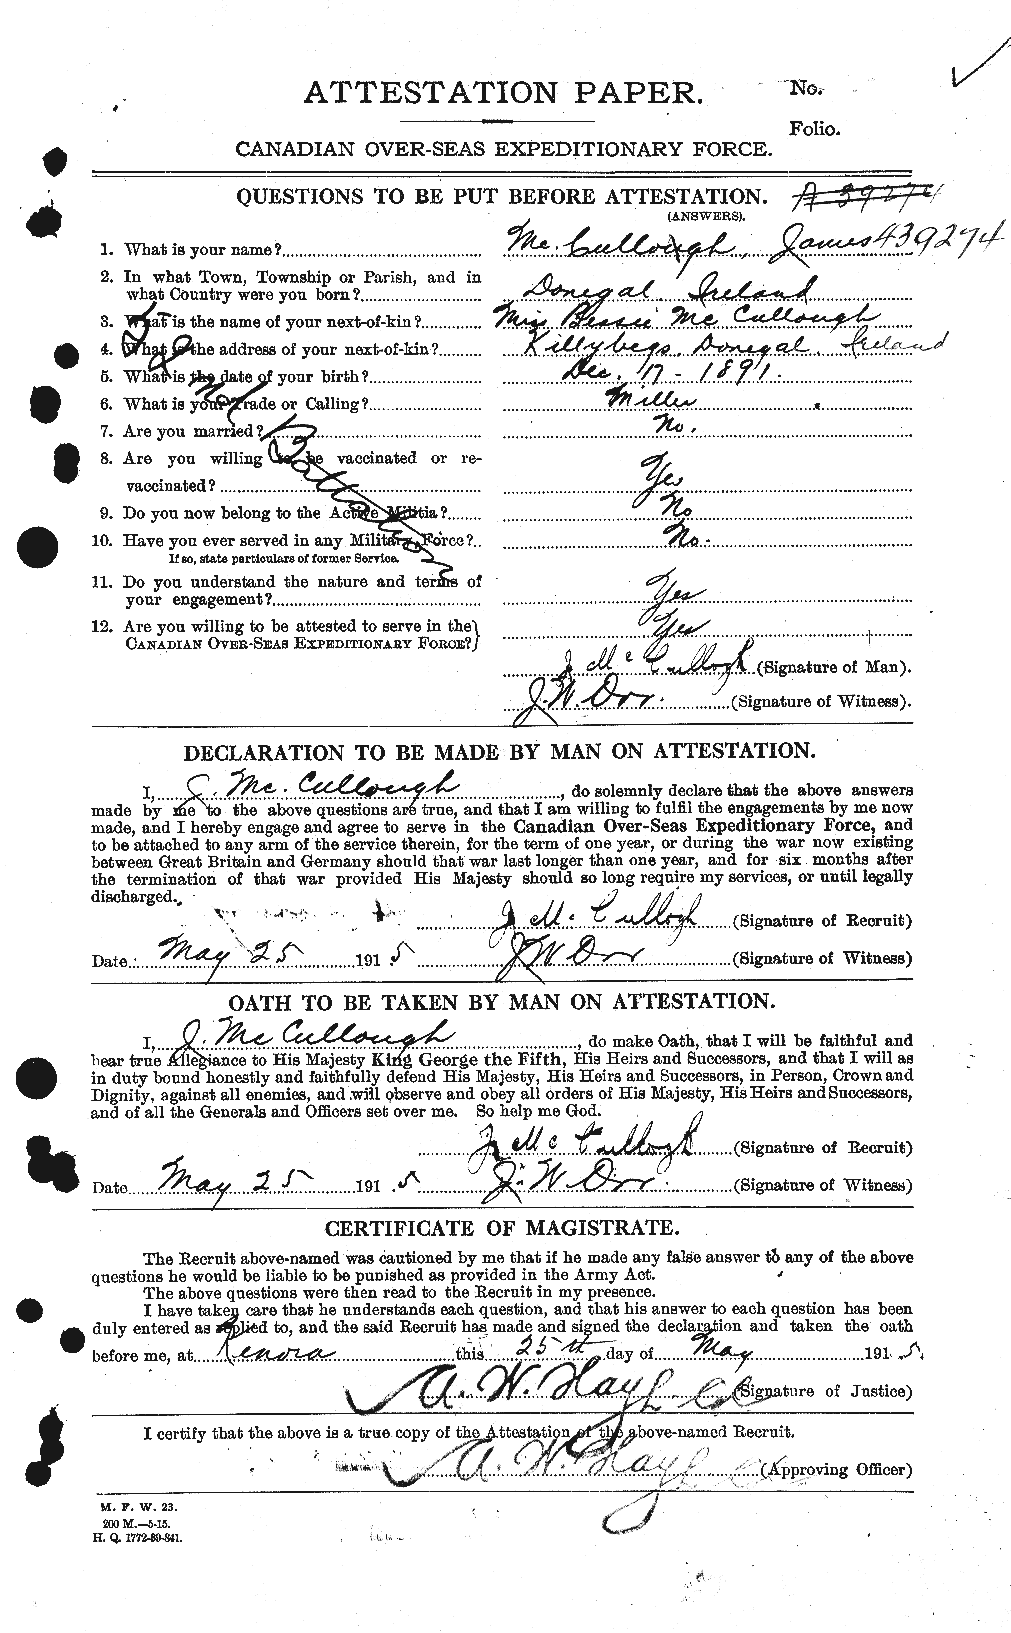 Dossiers du Personnel de la Première Guerre mondiale - CEC 136999a